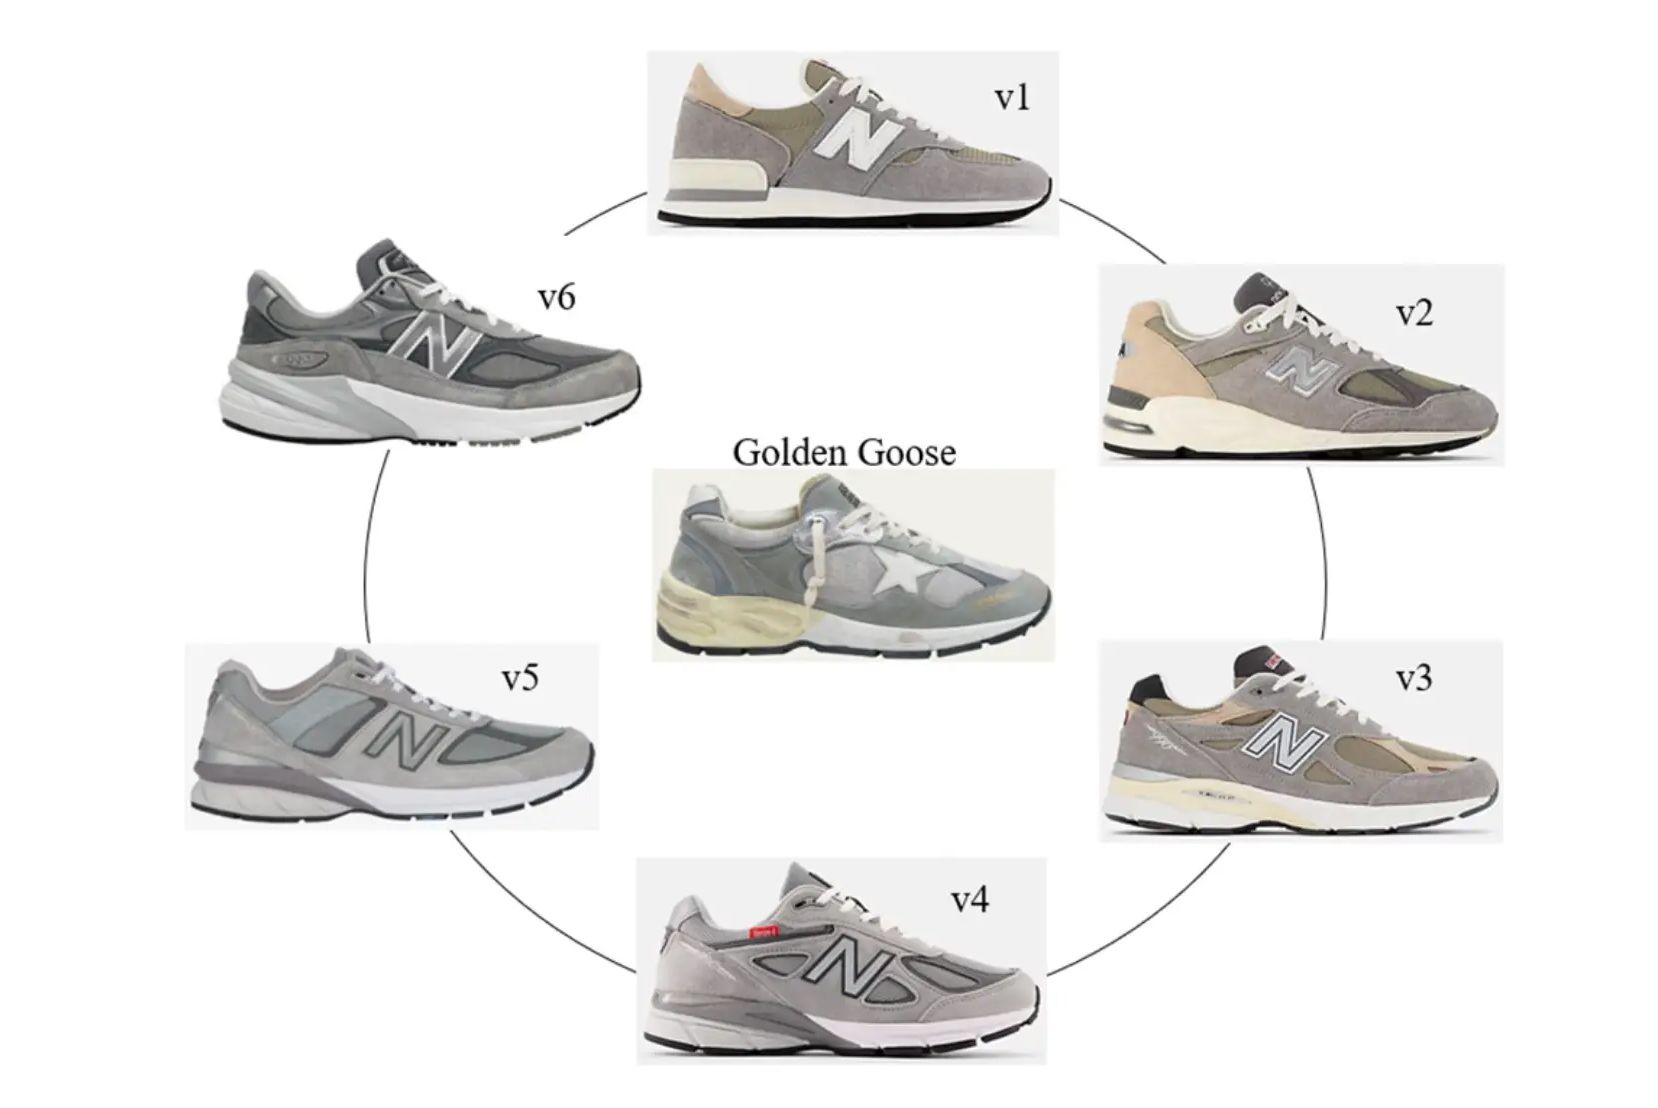 New Balance Sue Golden Goose and Request Profit Handover Sneaker Freaker